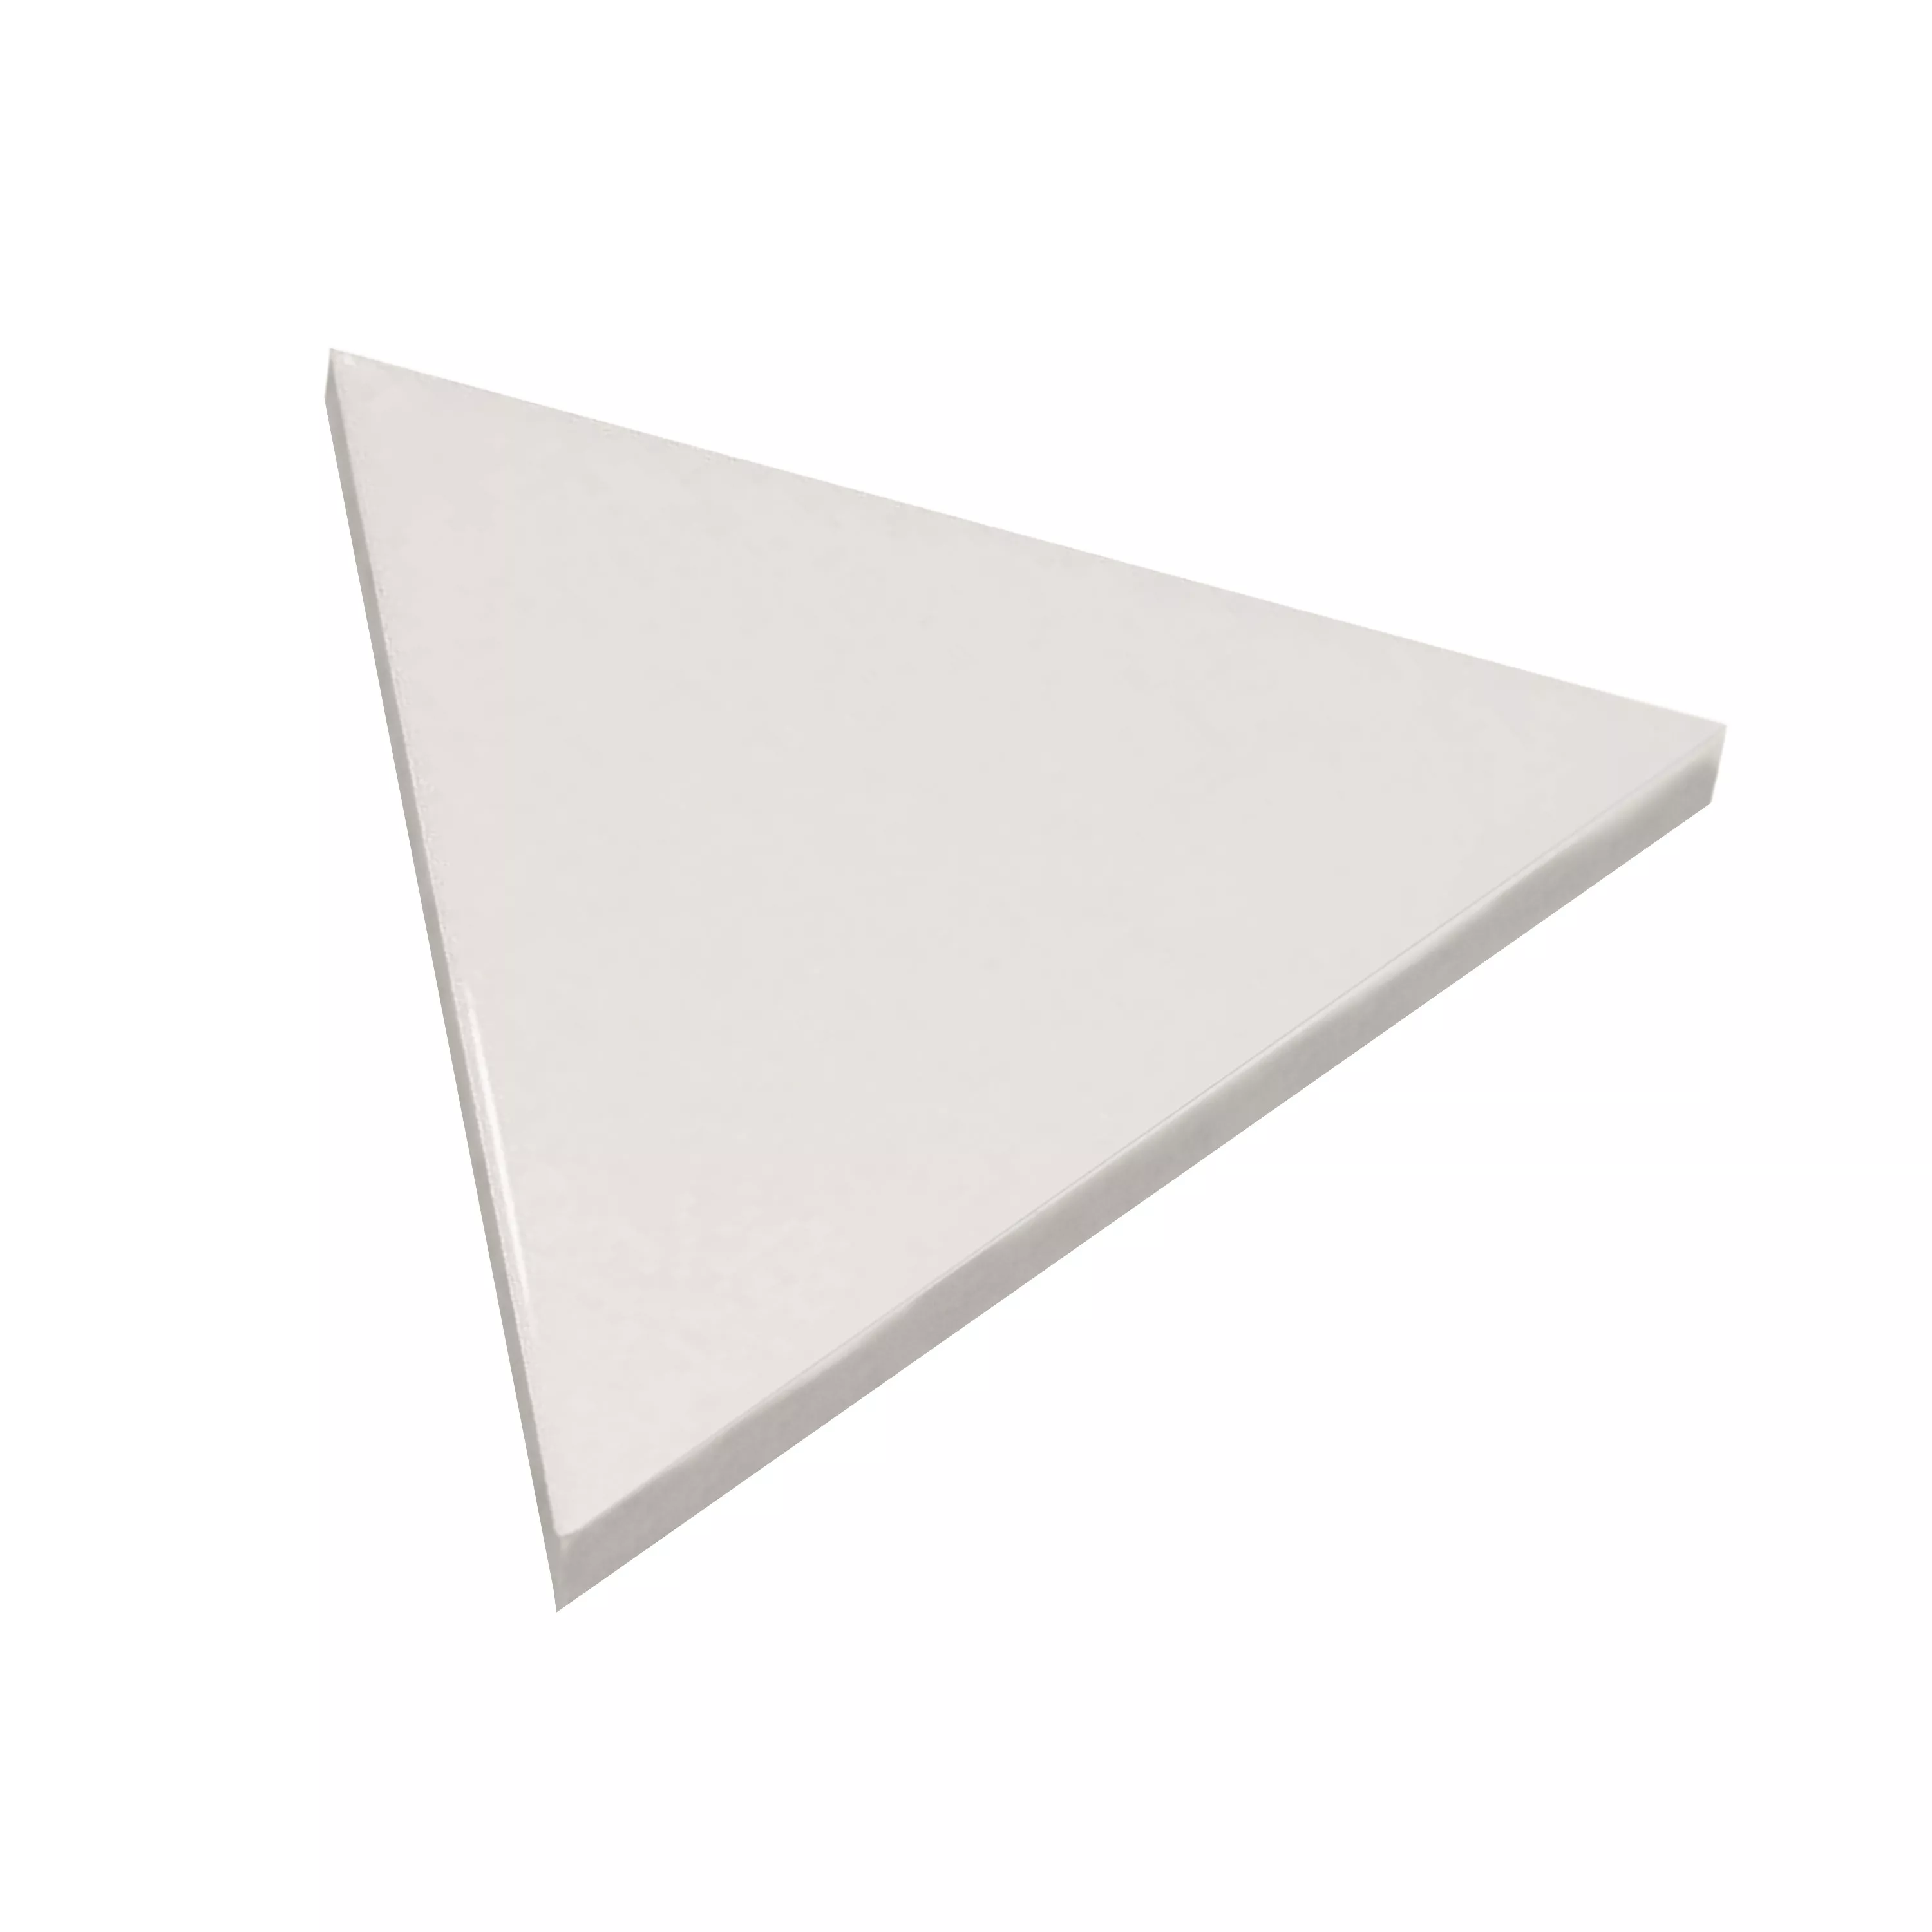 Sample Wall Tiles Britannia Triangle 10,8x12,4cm Blanc